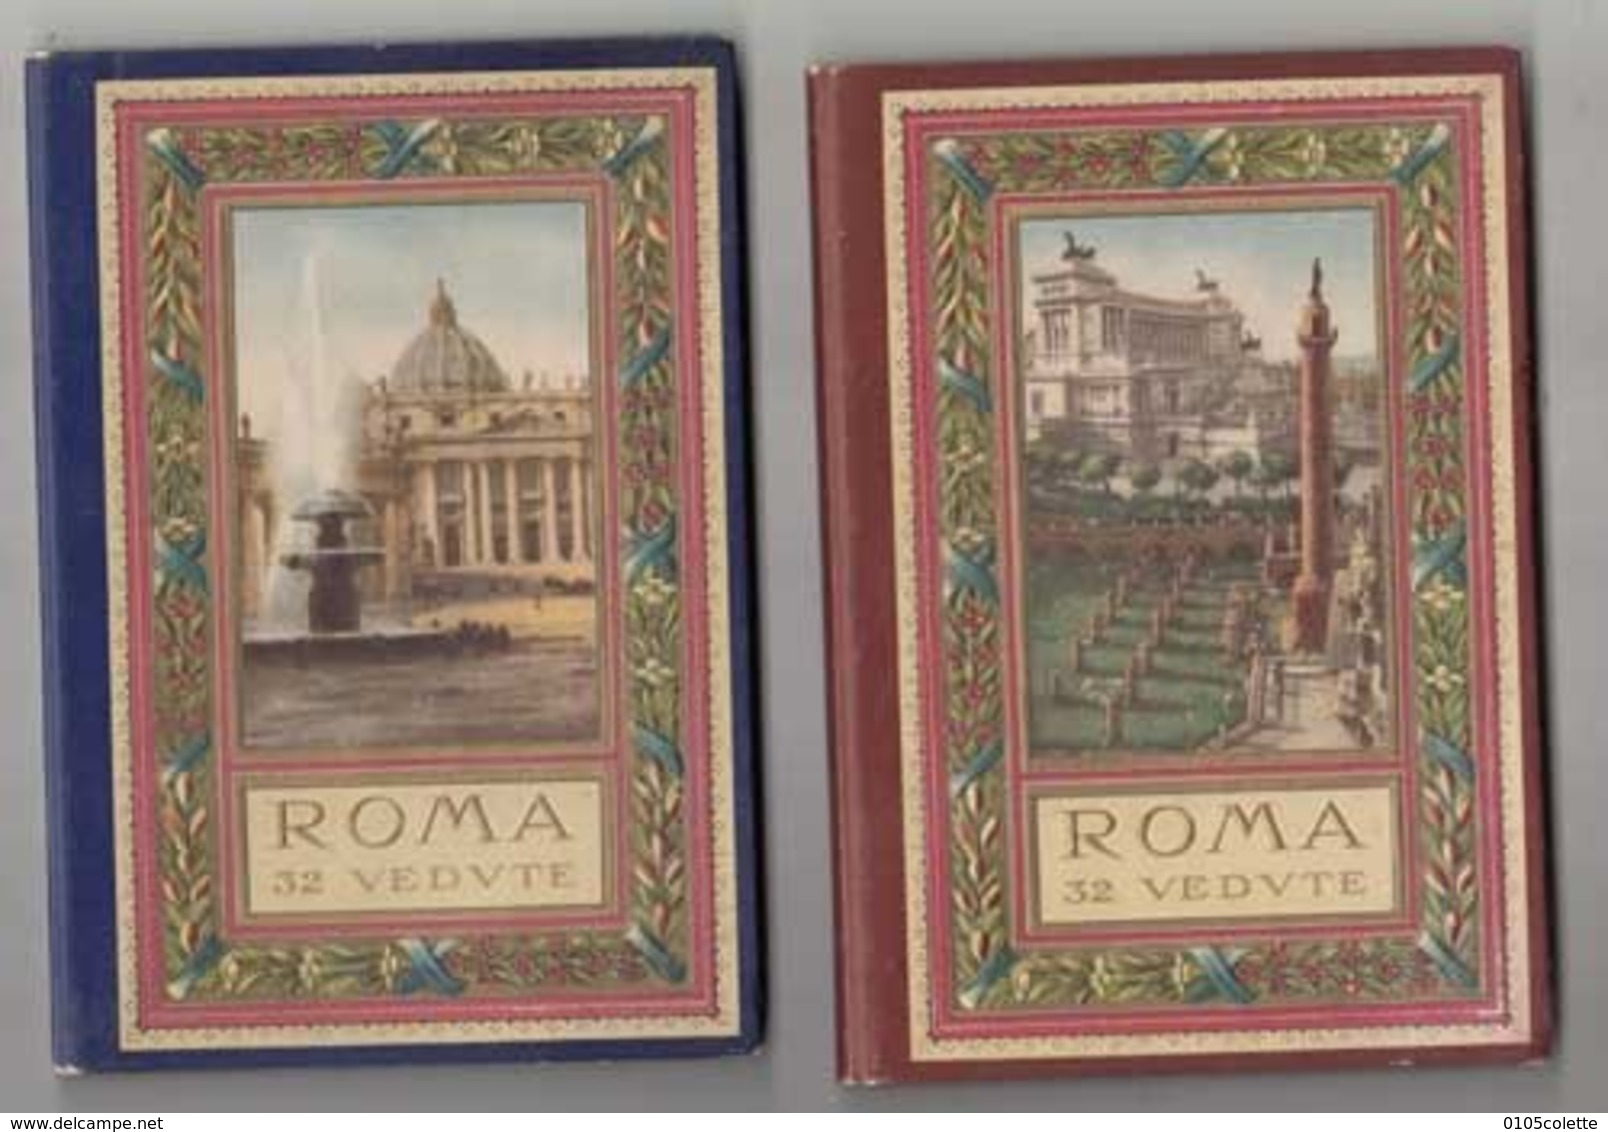 CPA Italie - Rome - 2 Trés Beaux Carnets De Rome De 32 Vedvte (64 Photos )    - Achat Immédiat  (cd 004) - Collections & Lots